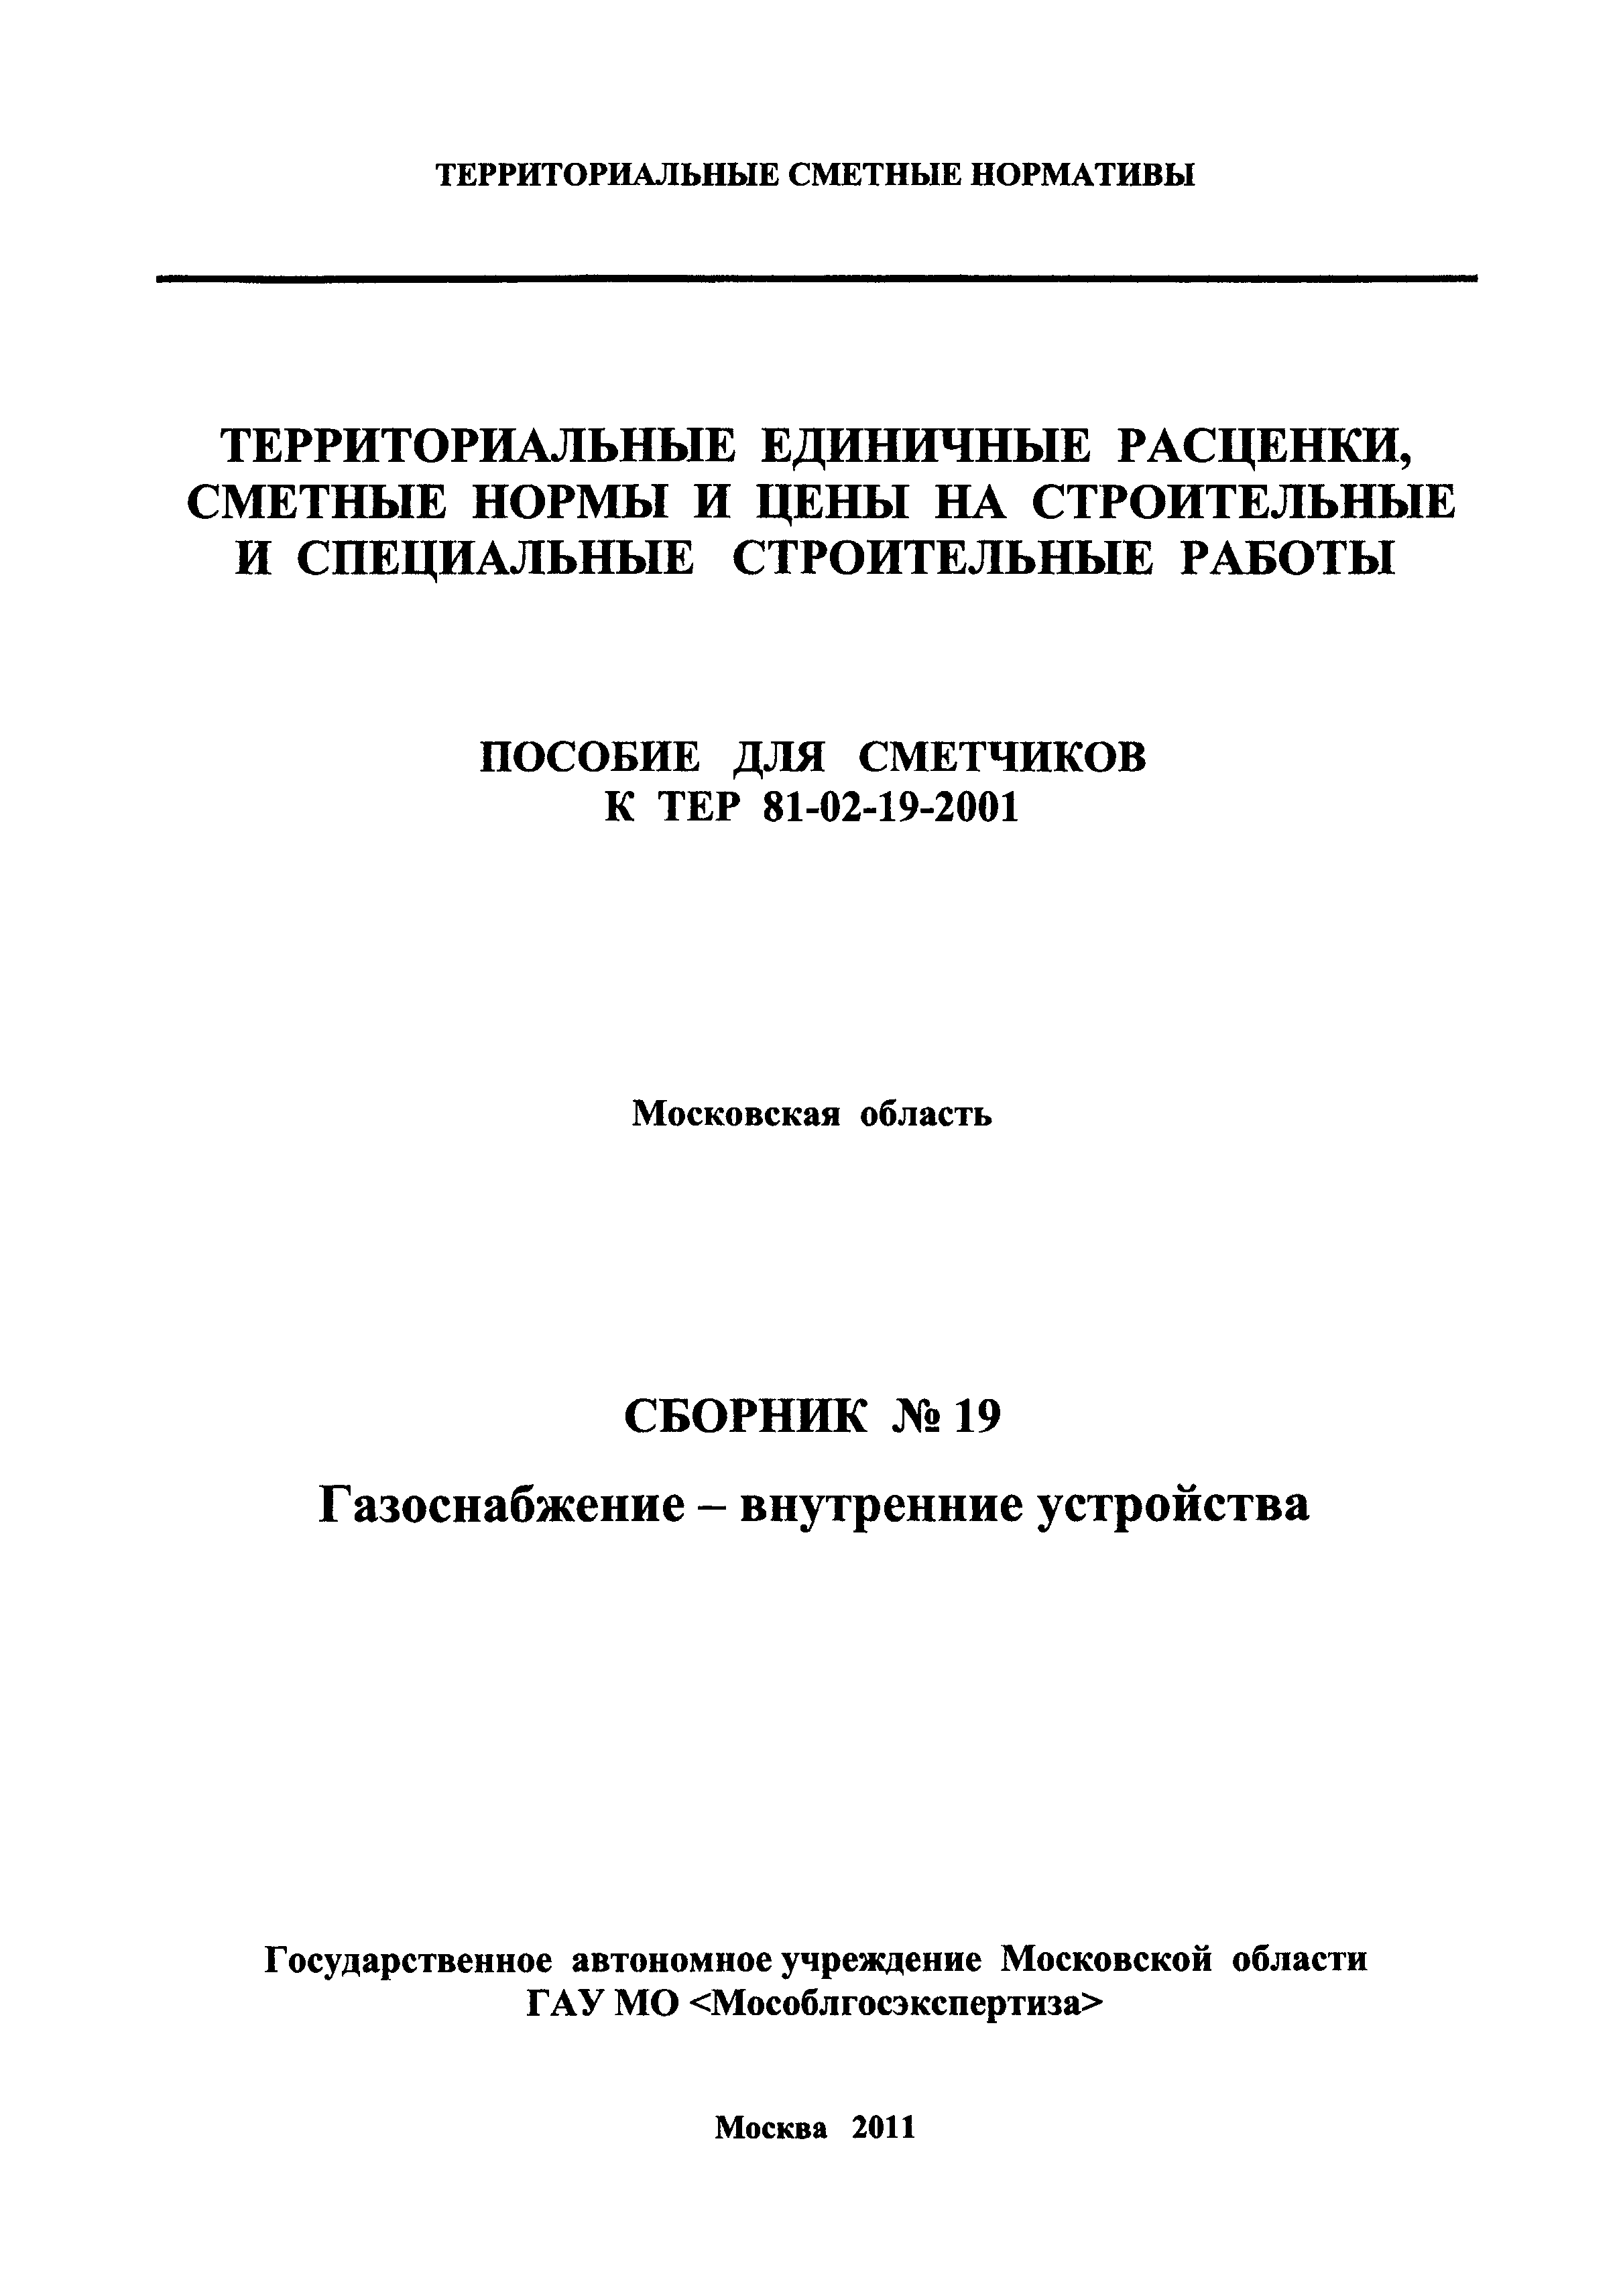 ГЭСНПиТЕР 2001-19 Московской области